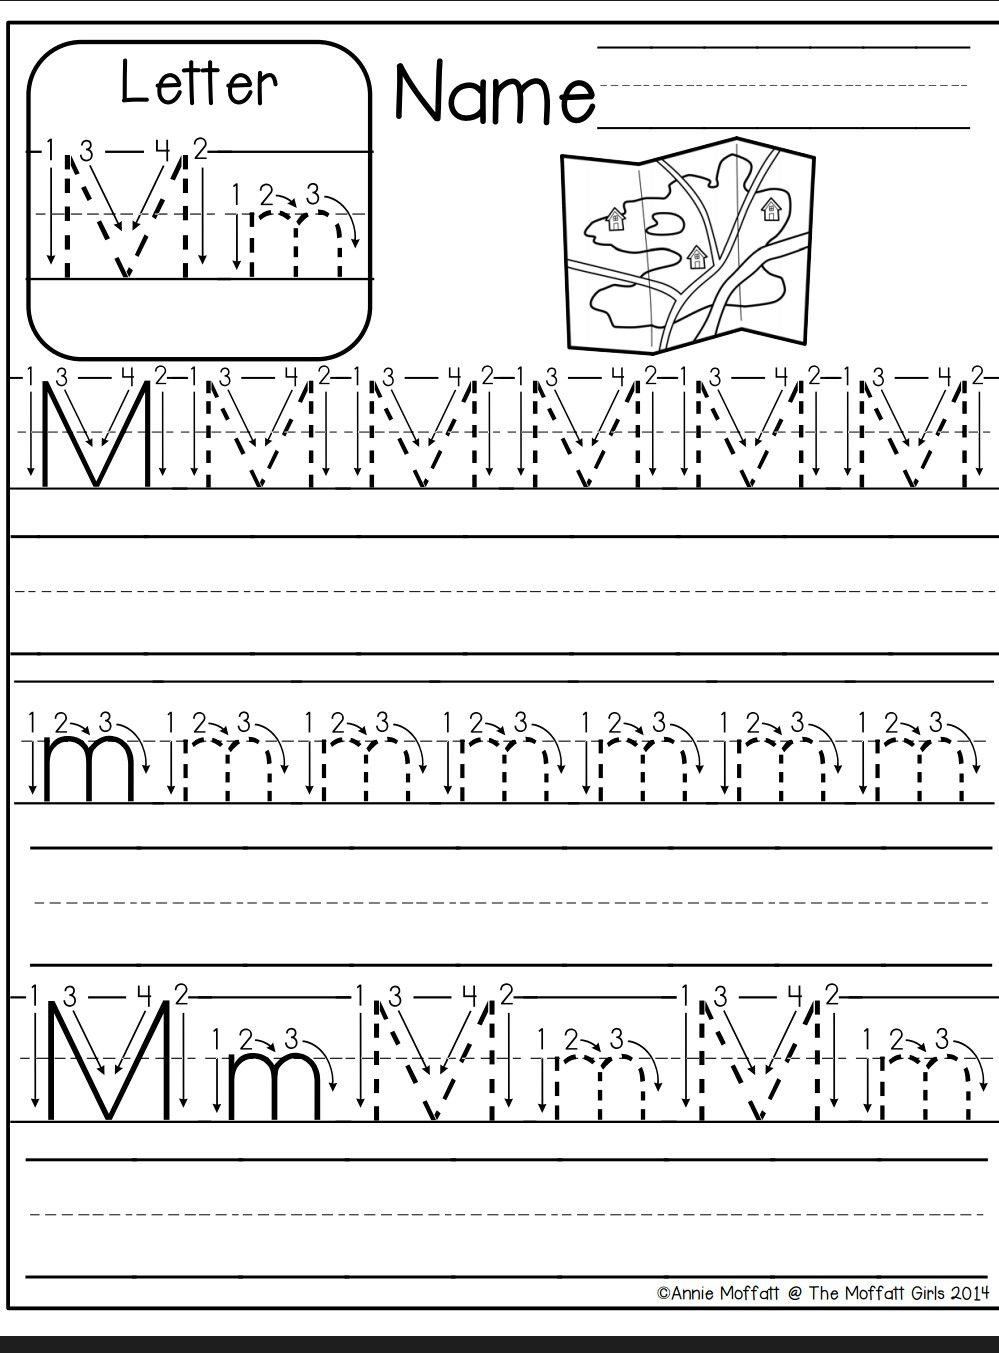 Letter M Worksheet | Kindergarten Abc Worksheets, Alphabet regarding Letter Tracing M